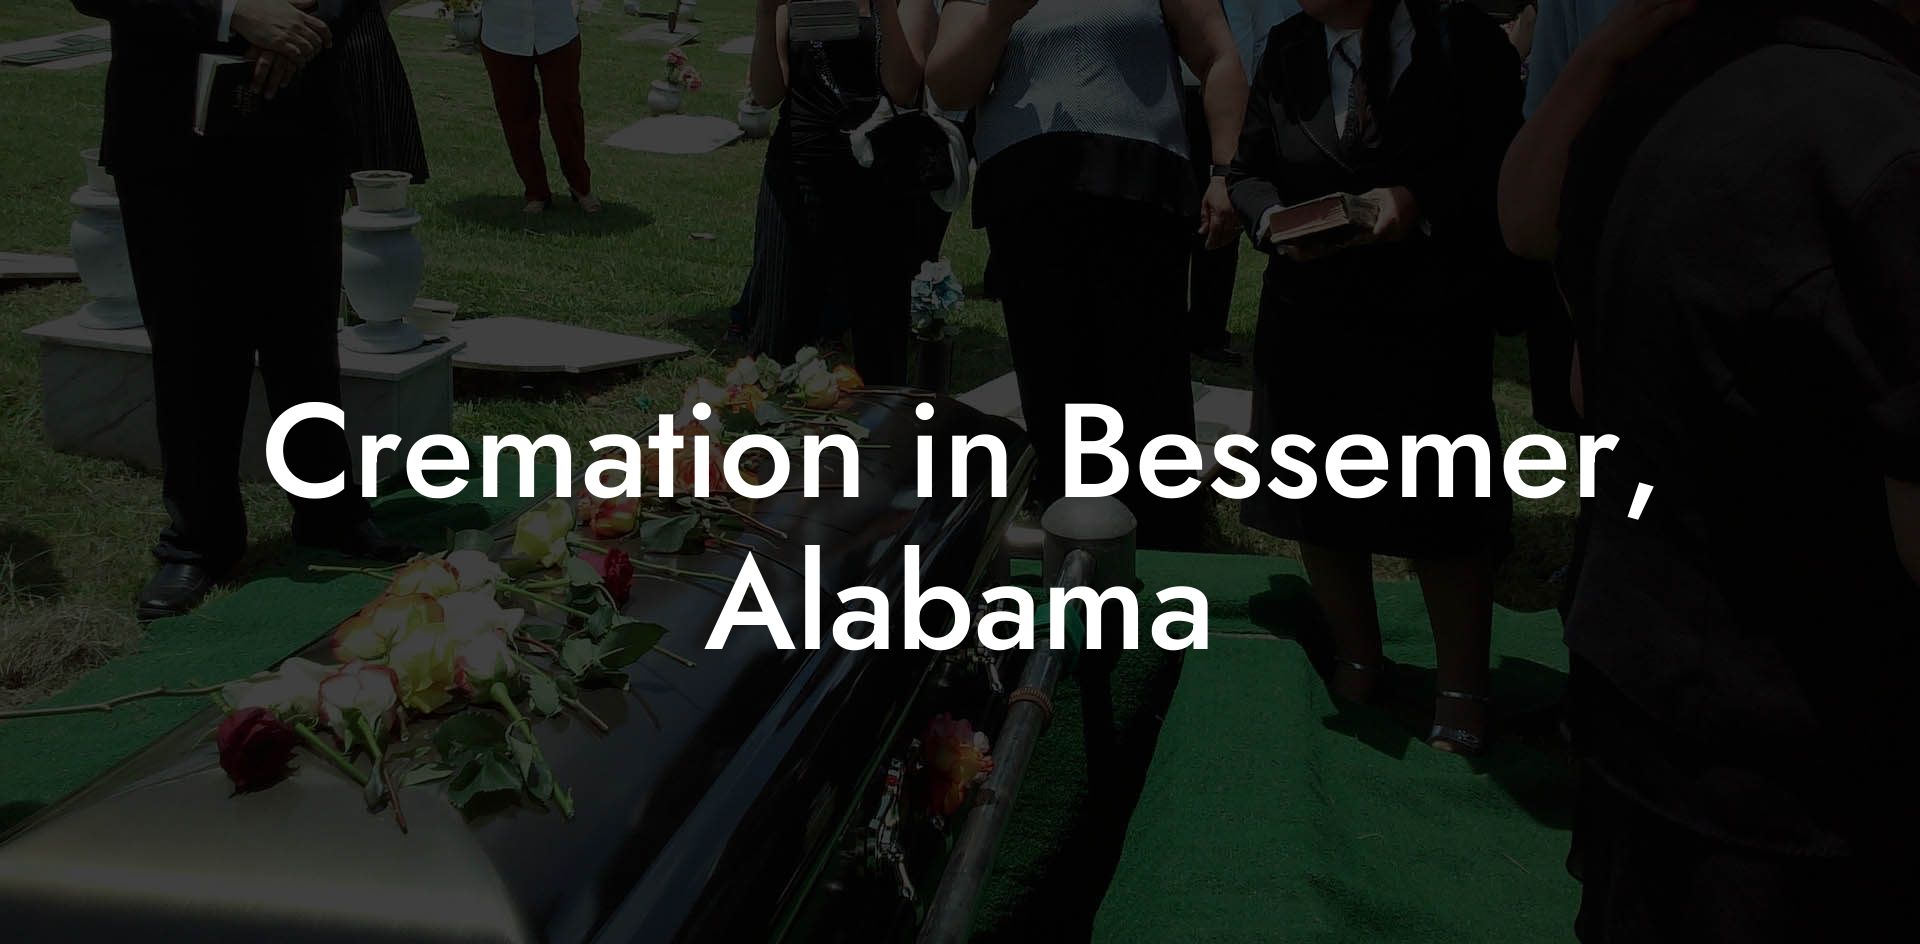 Cremation in Bessemer, Alabama